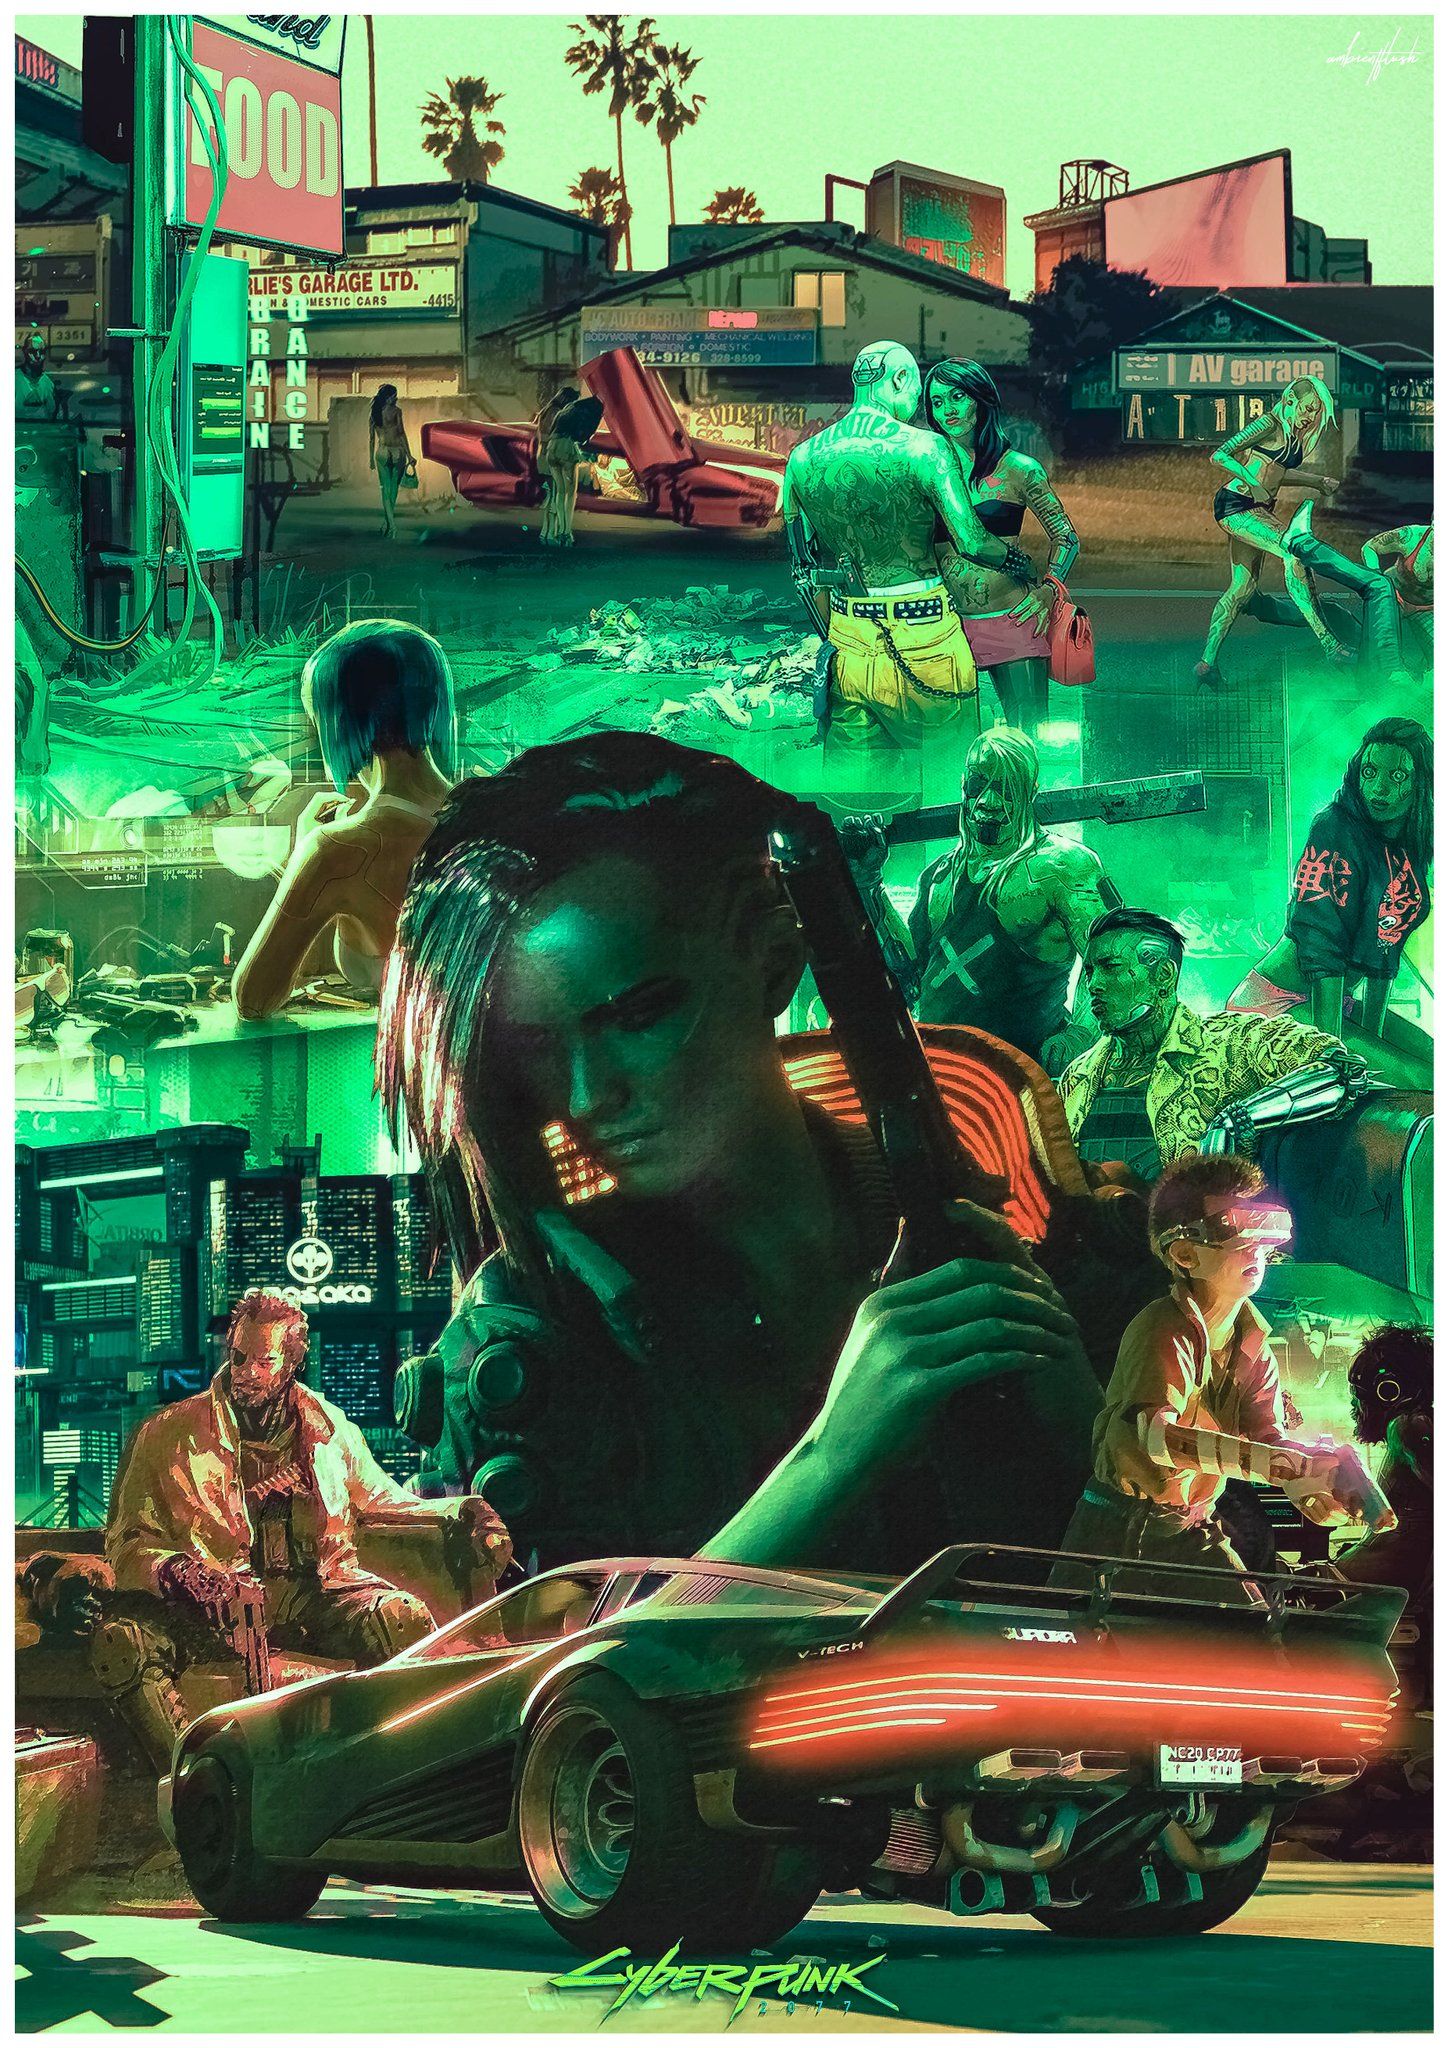 Made this Cyberpunk 2077 art /poster/ wallpaper